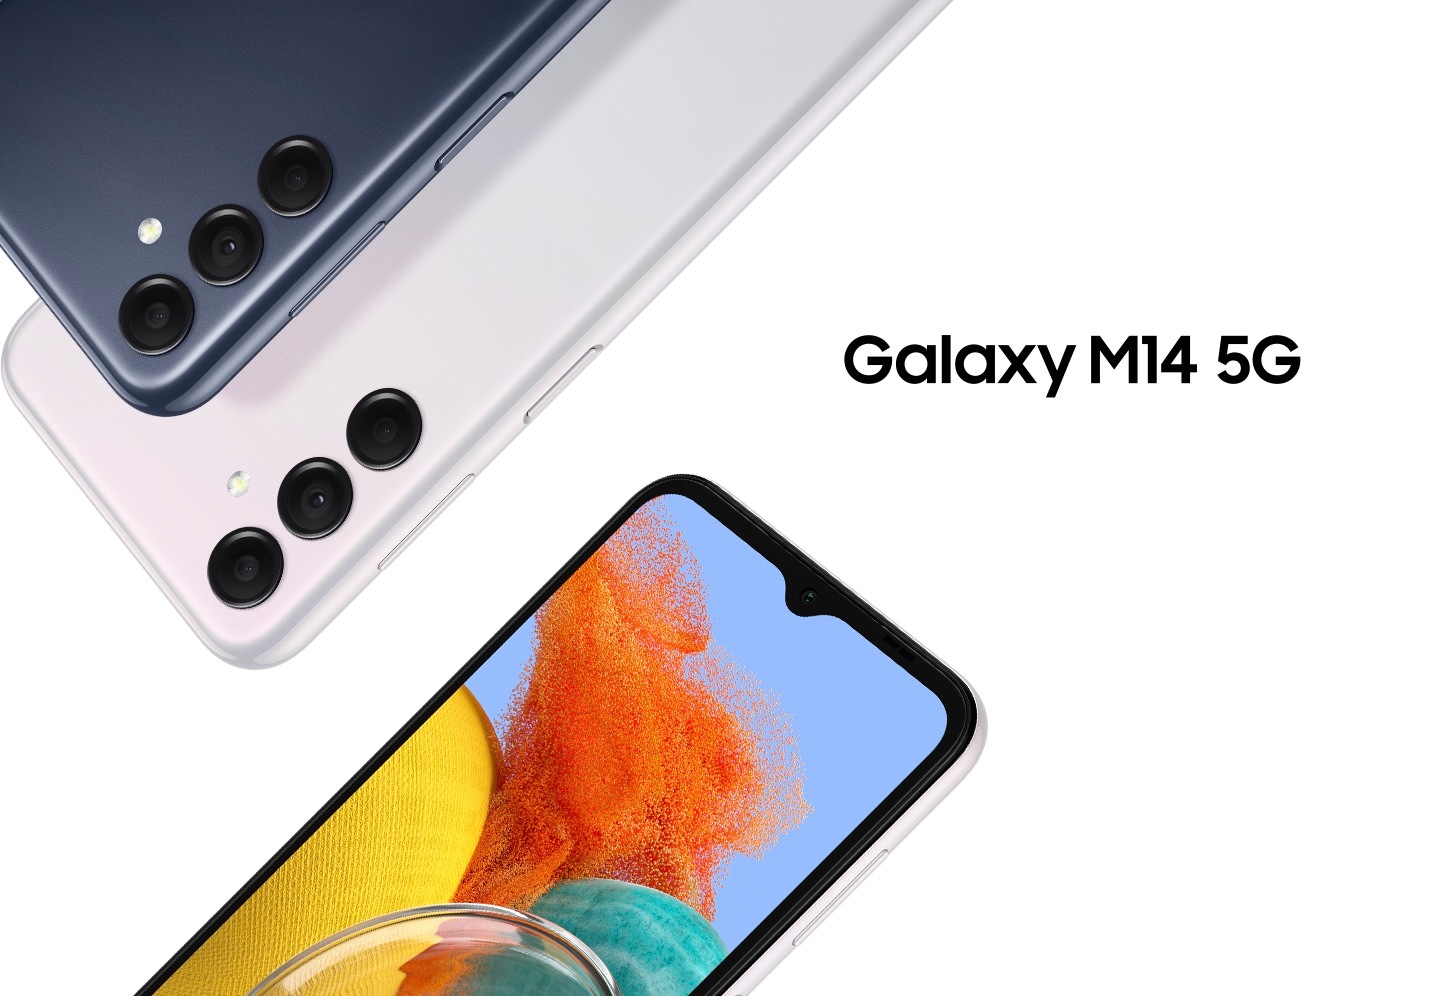 三部 Galaxy M14 5G 手機展示了闇夜藍和星燦銀的手機背面及正面，螢幕上顯示了彩色照片。